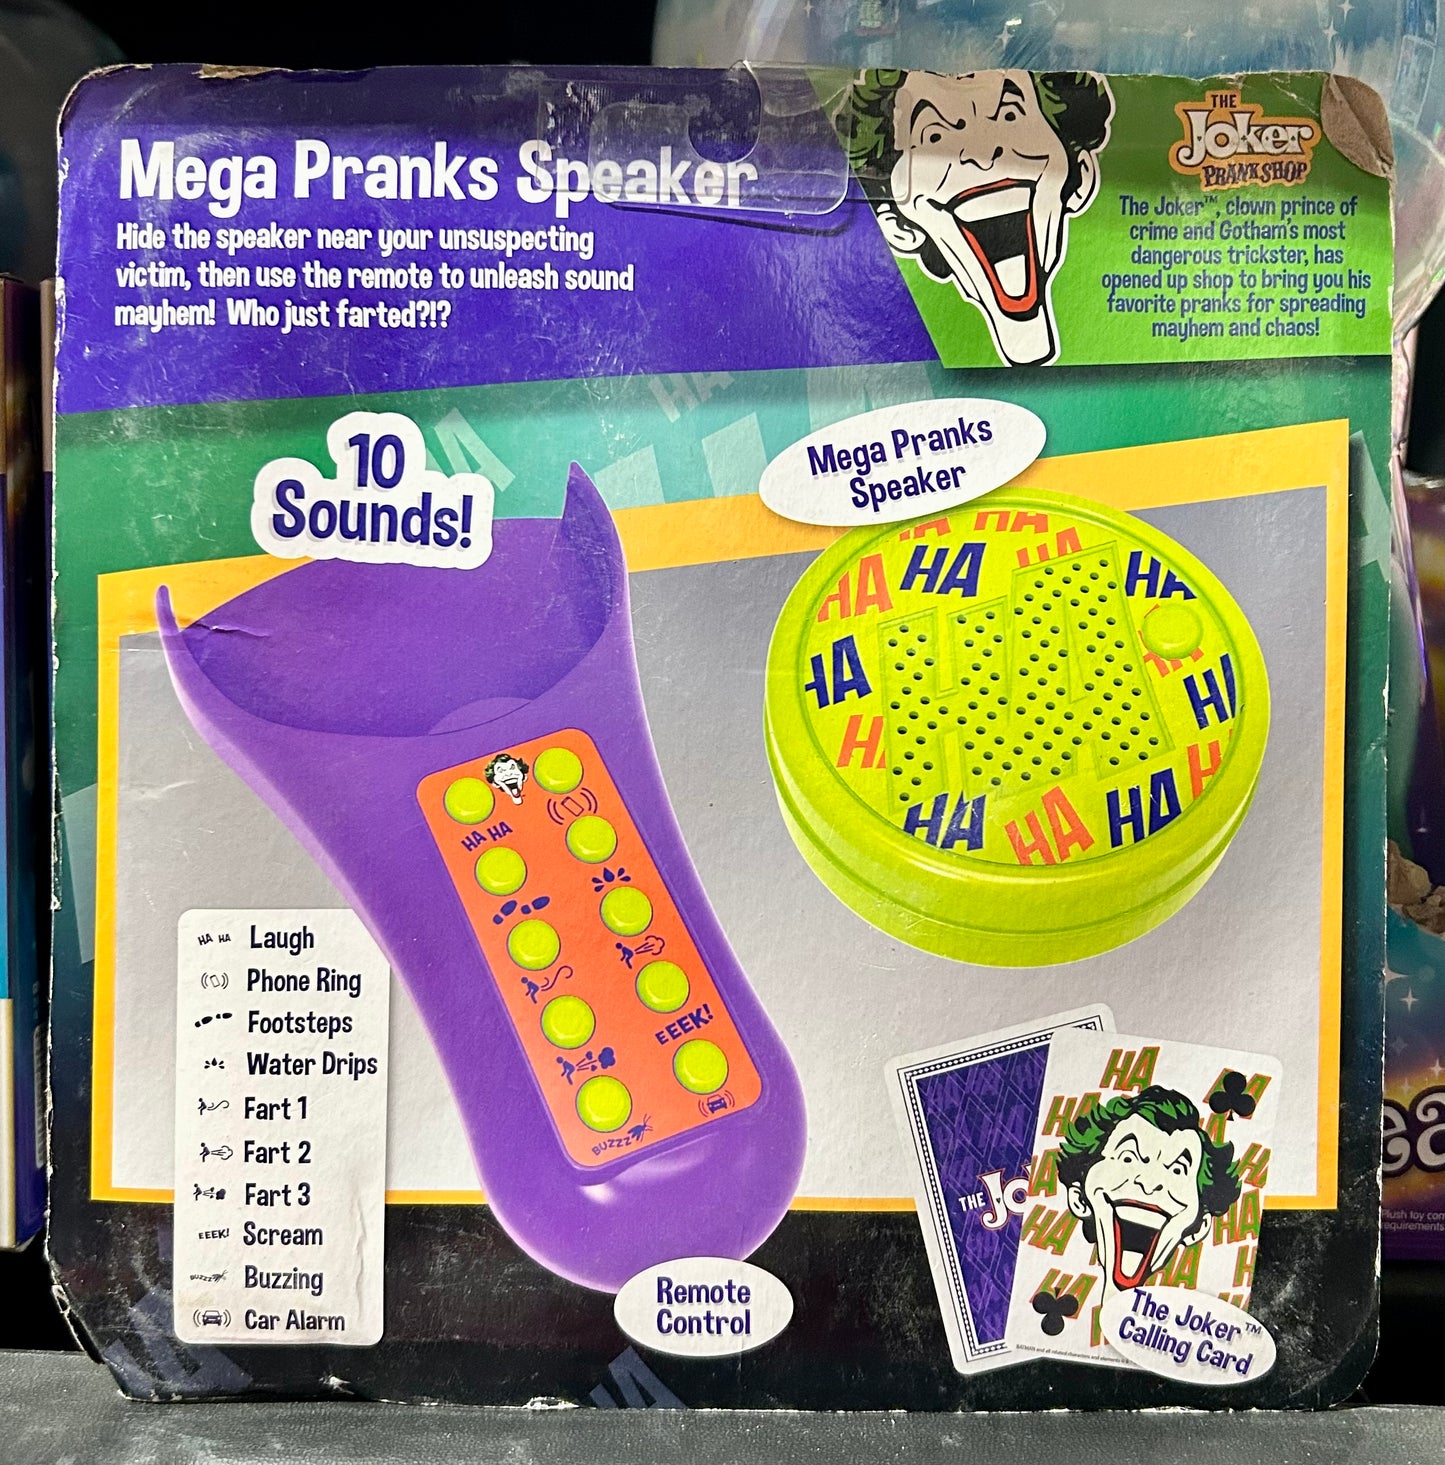 DC The Joker Prank Shop Mega Pranks Speaker